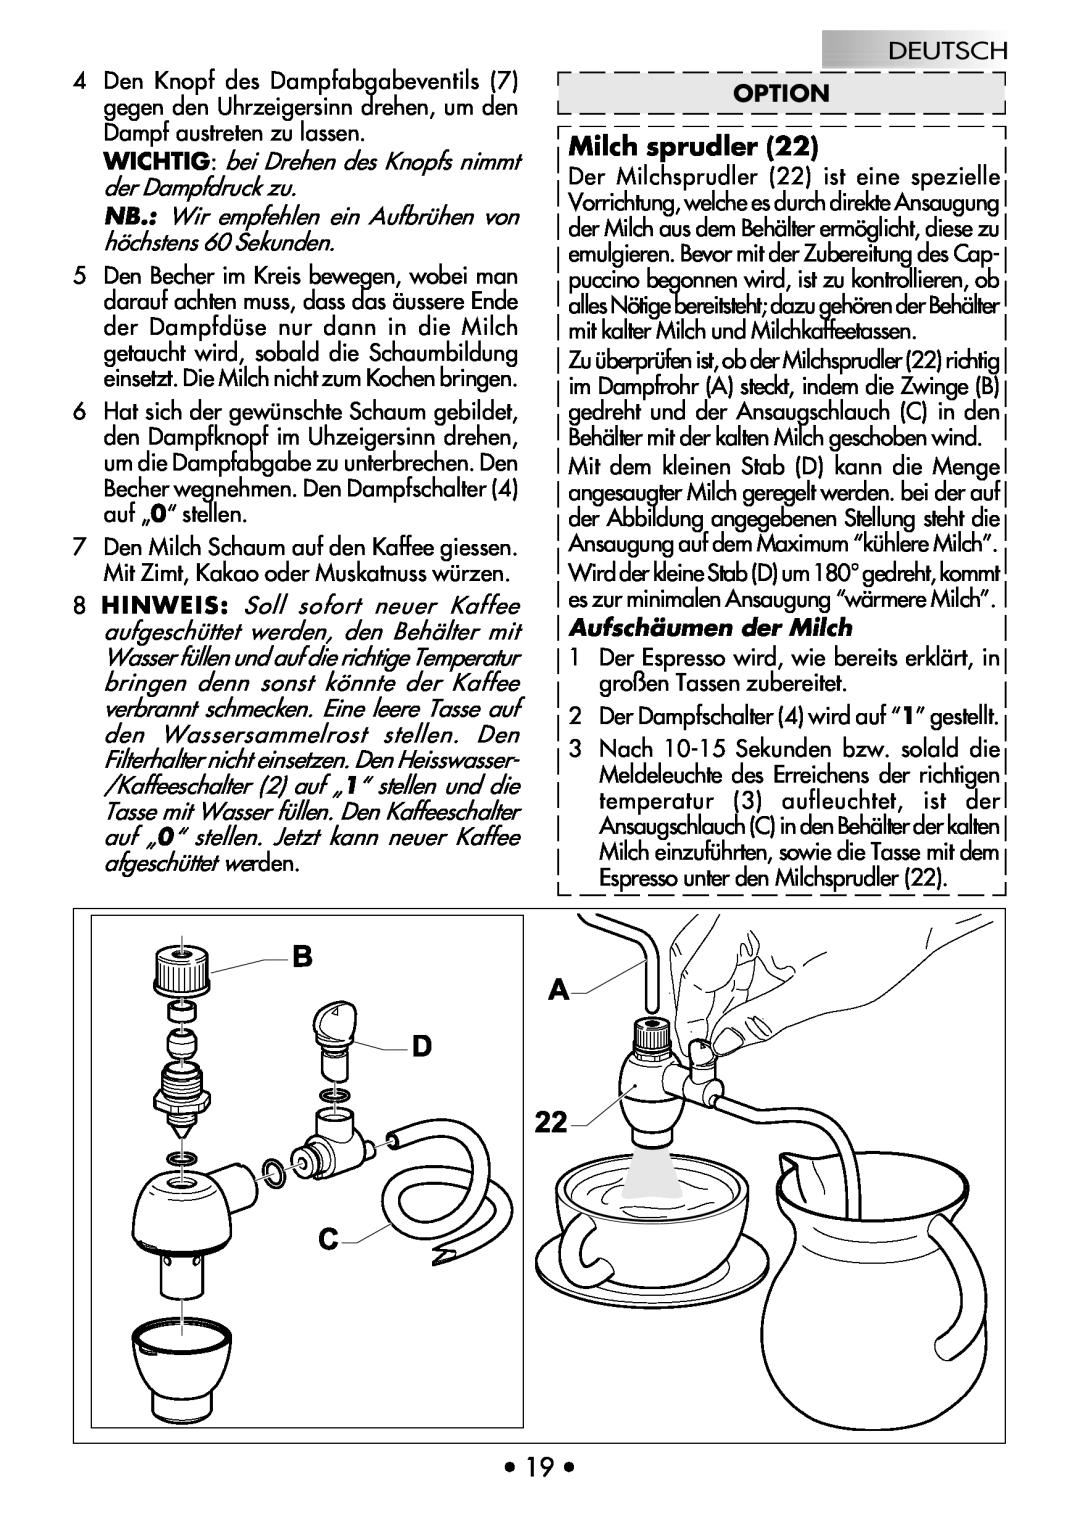 Gaggia COFFEE DELUXE manual Milch sprudler, WICHTIG bei Drehen des Knopfs nimmt der Dampfdruck zu, Deutsch Option 